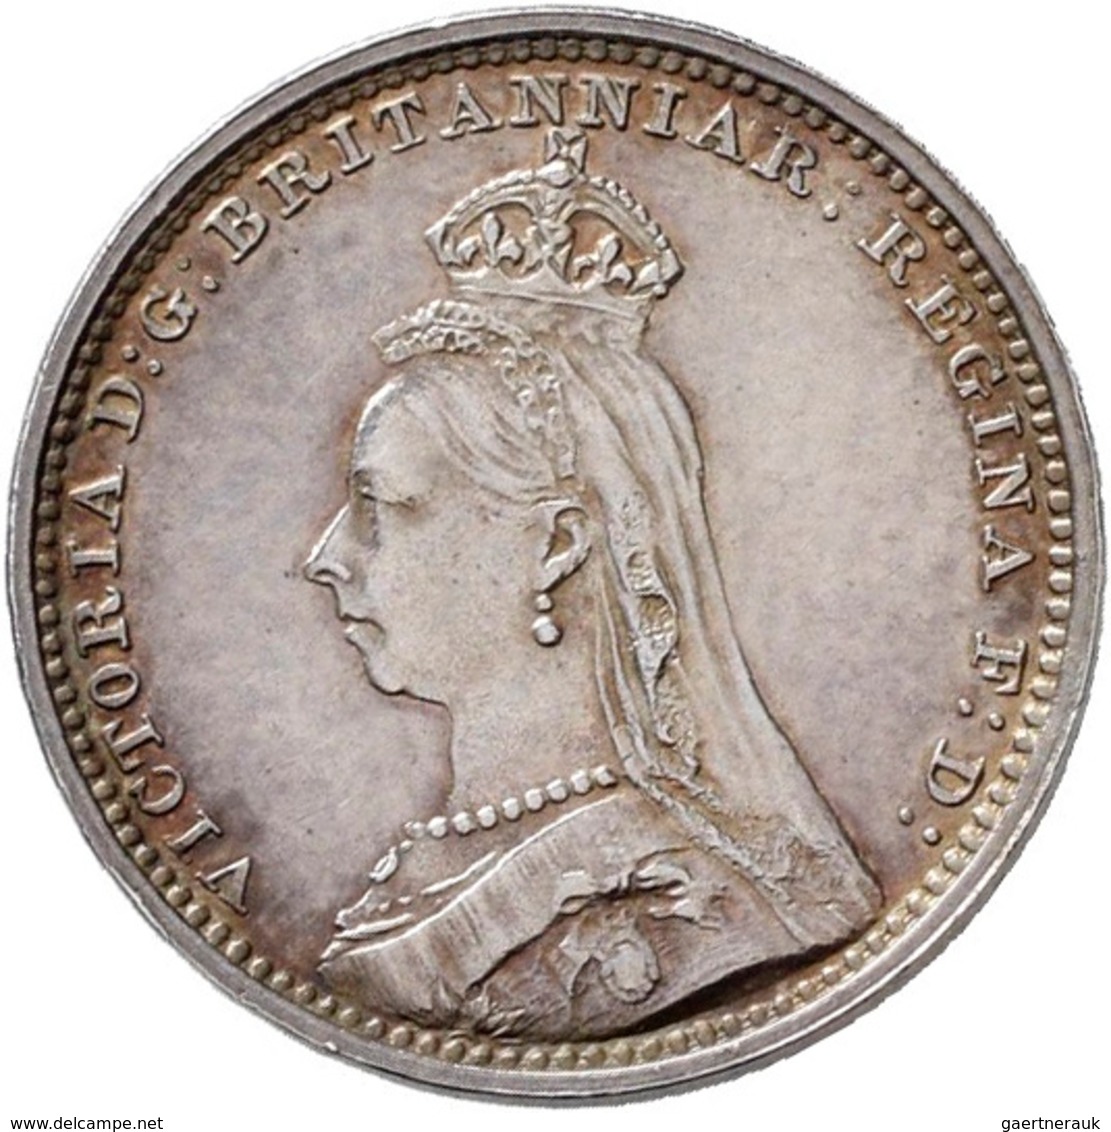 Großbritannien: Victoria 1837-1901: Maundy Set 1,2,3,4 Pence 1892, vorzüglich, vorzüglich-Stempelgla